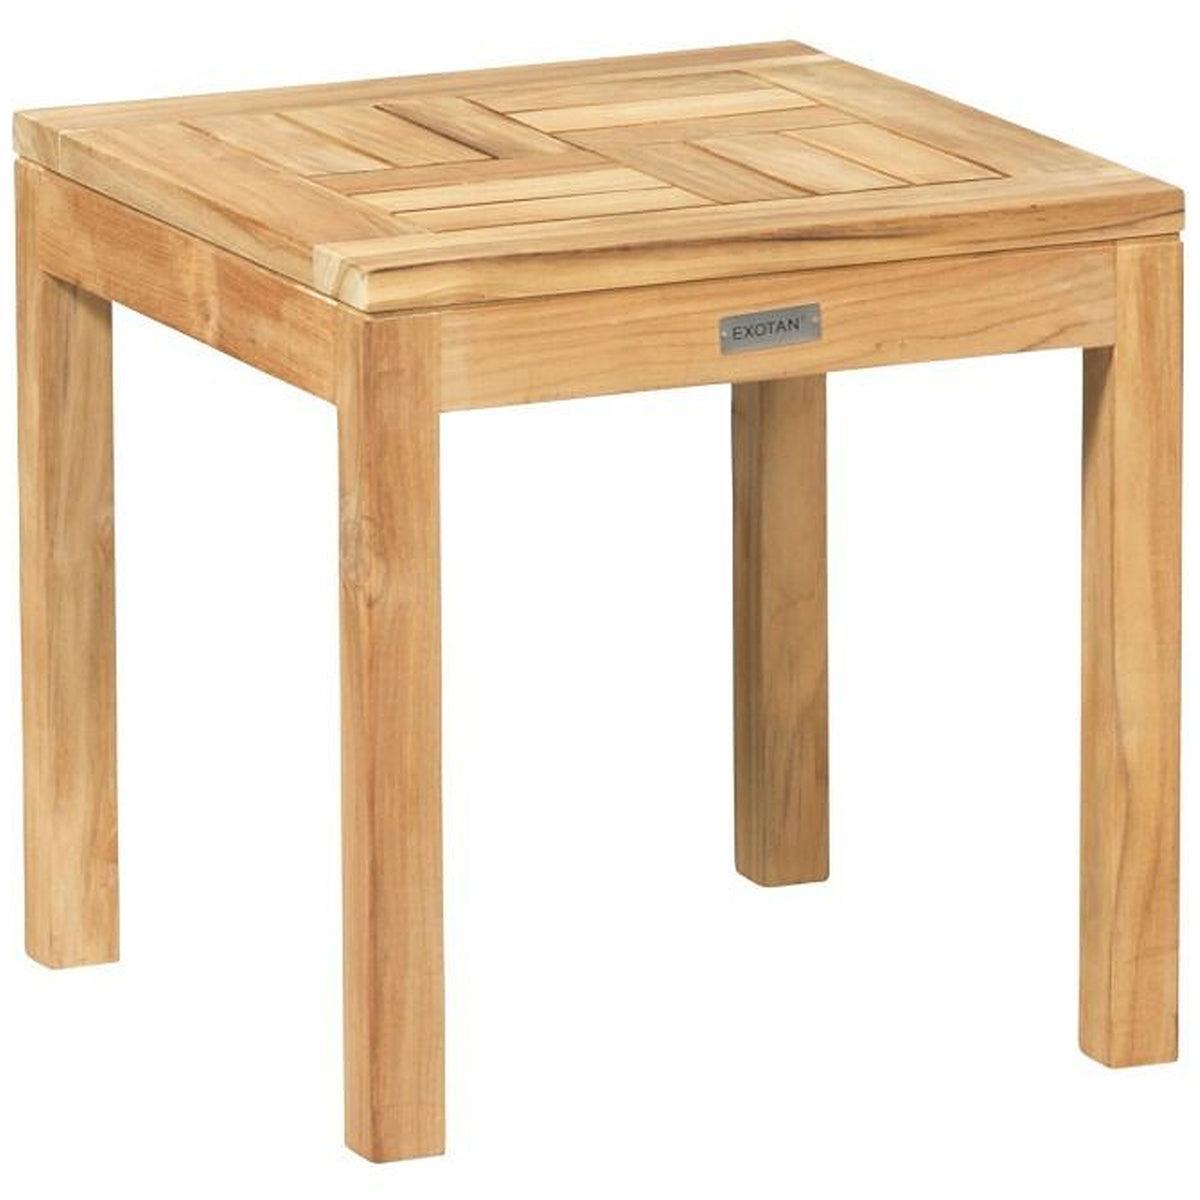 End Teak Wood Coffee Table - WOO .Design